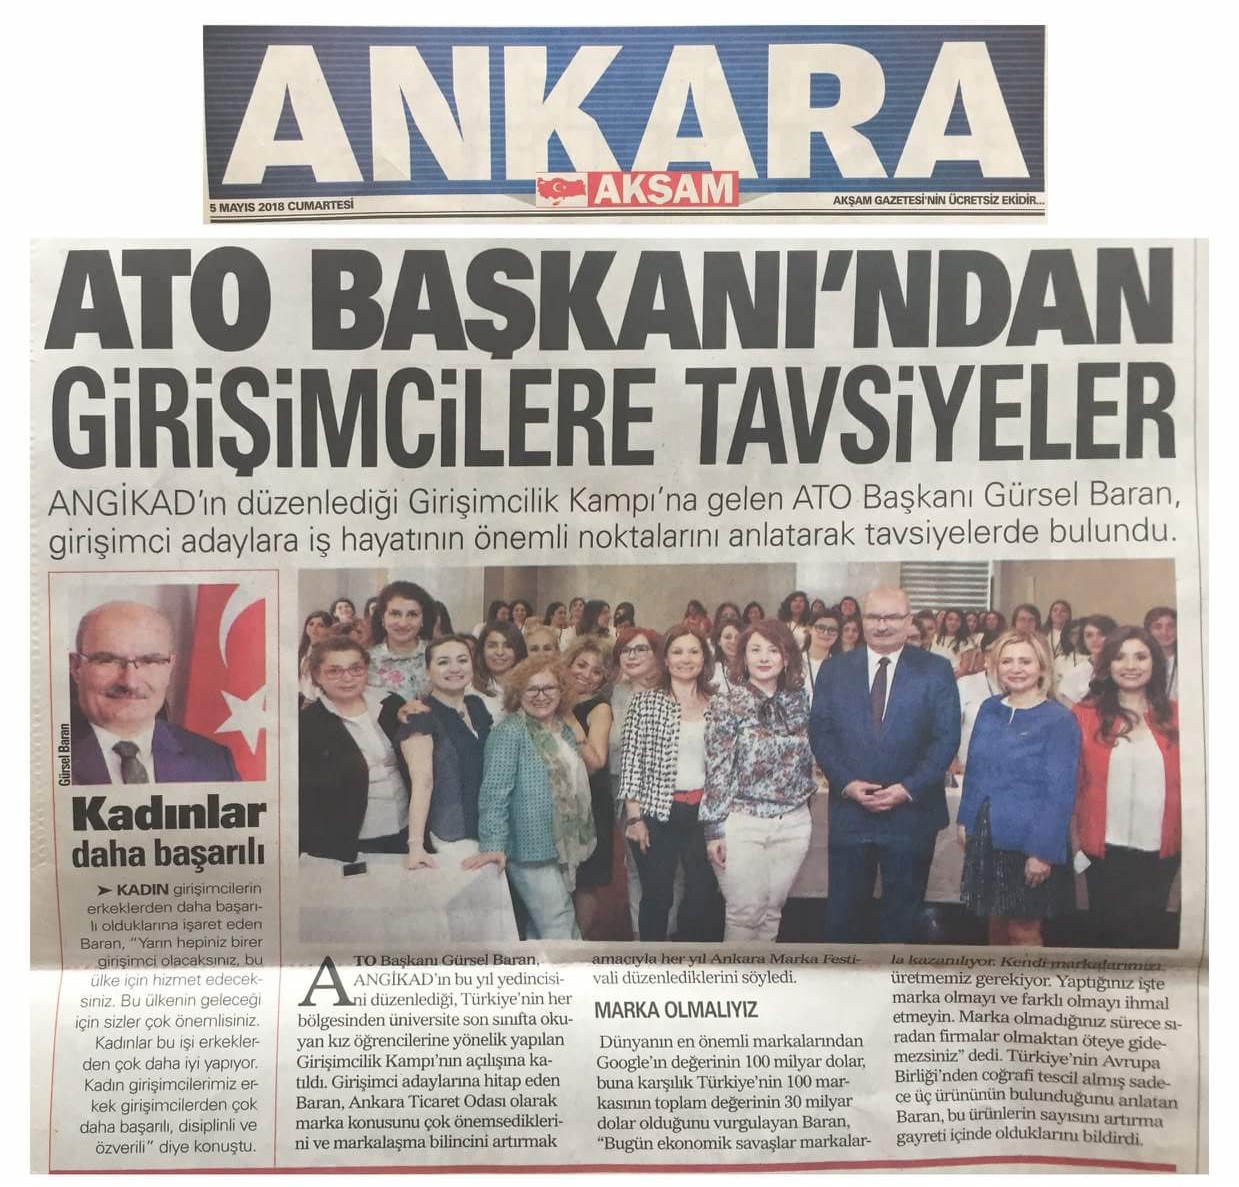 Sabah Ankara - ATO Başkanı'ndan Girişimcilere Tavsiyeler